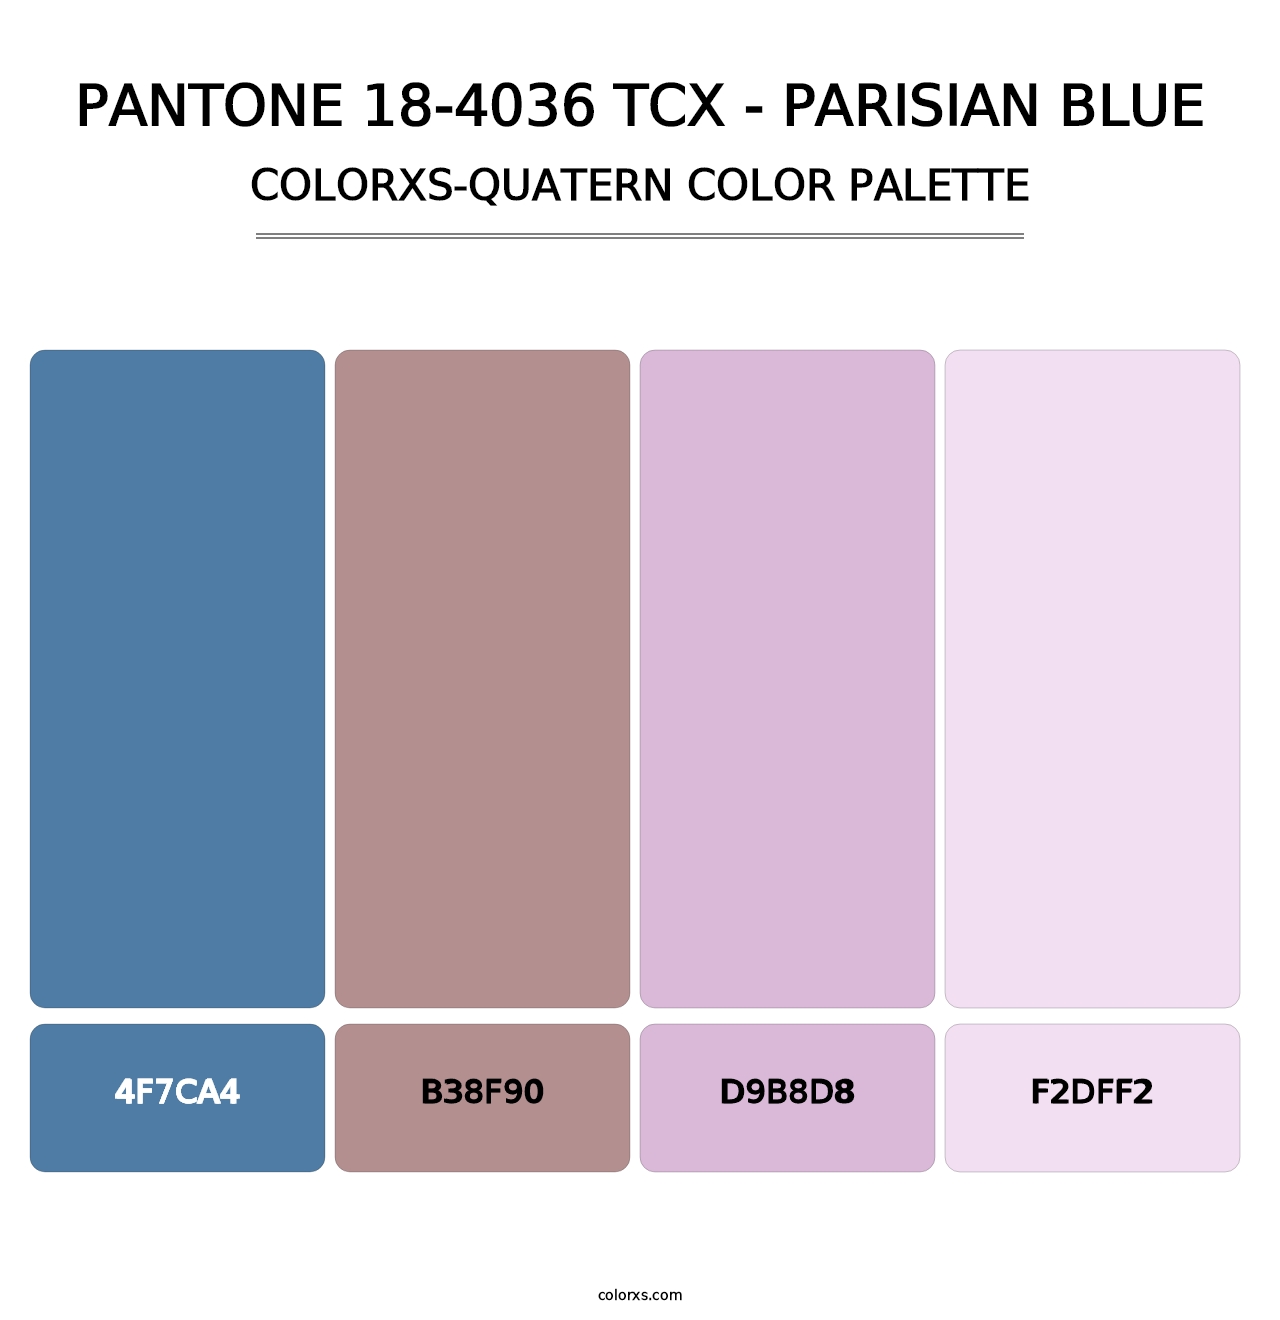 PANTONE 18-4036 TCX - Parisian Blue - Colorxs Quatern Palette